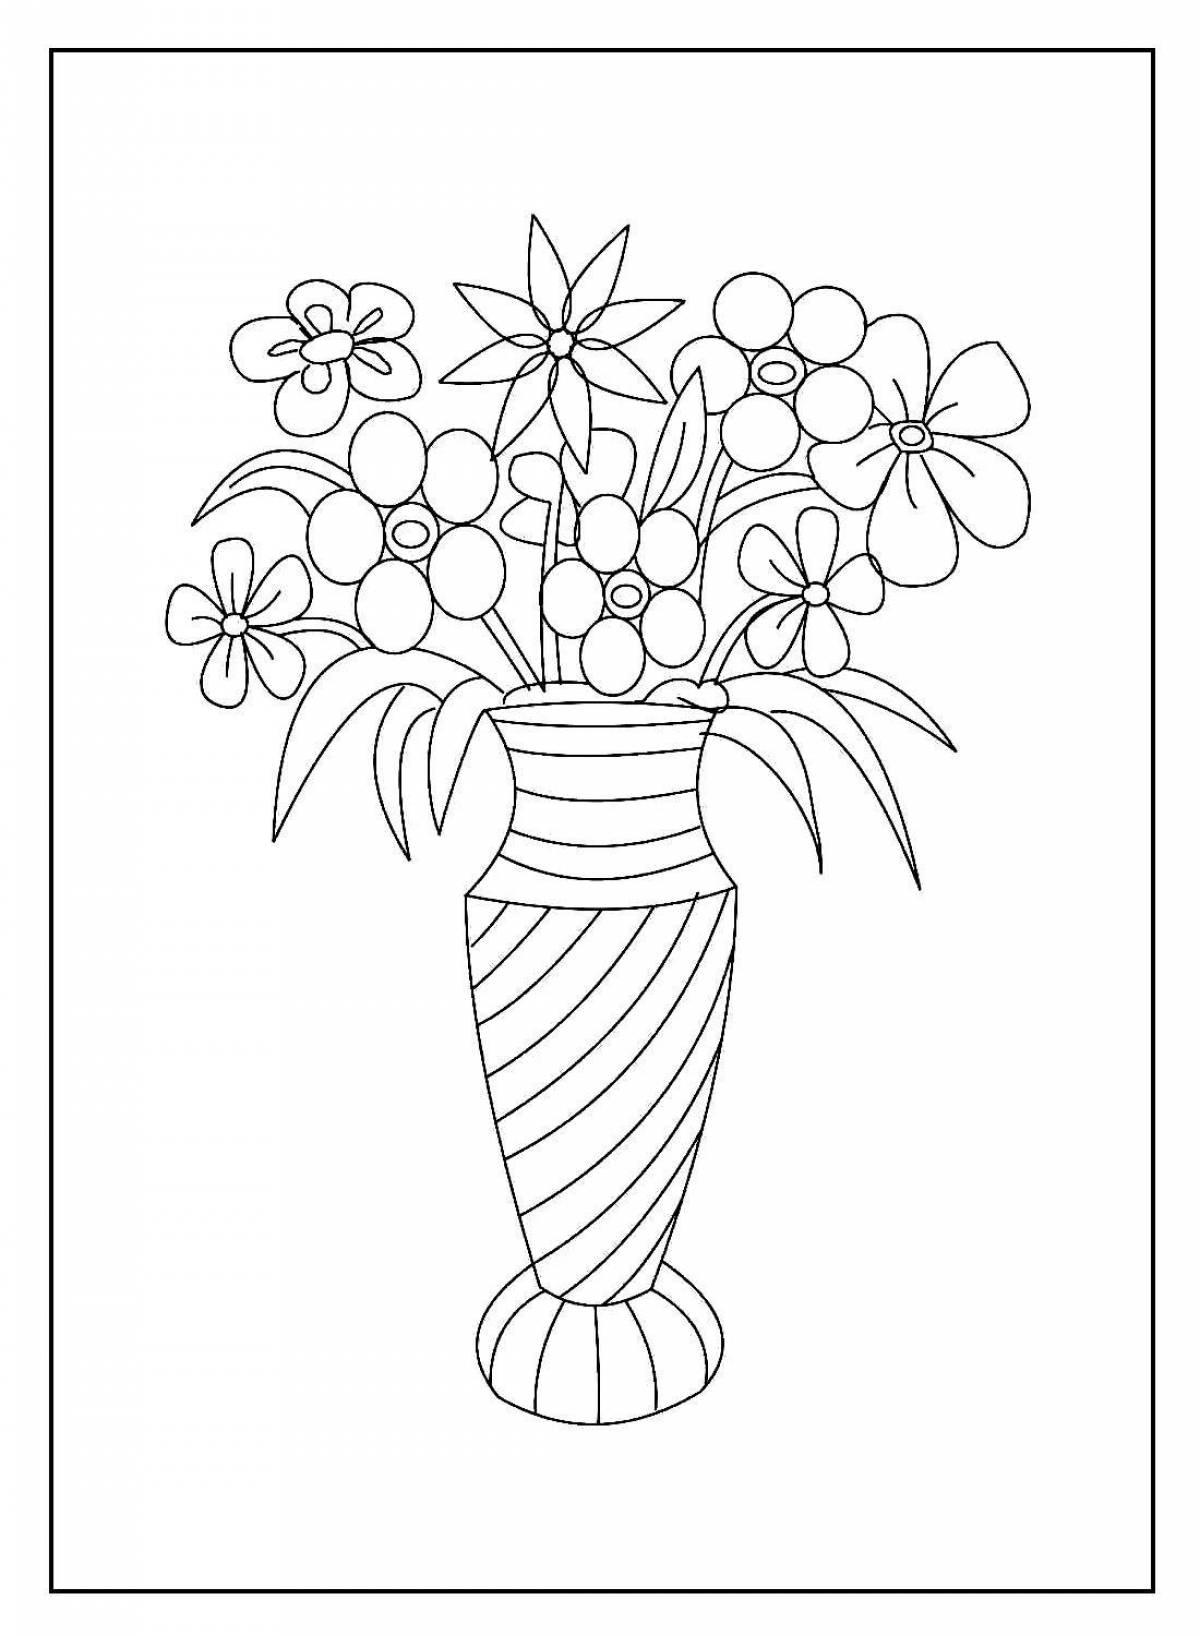 Shining flower vase for children 3-4 years old